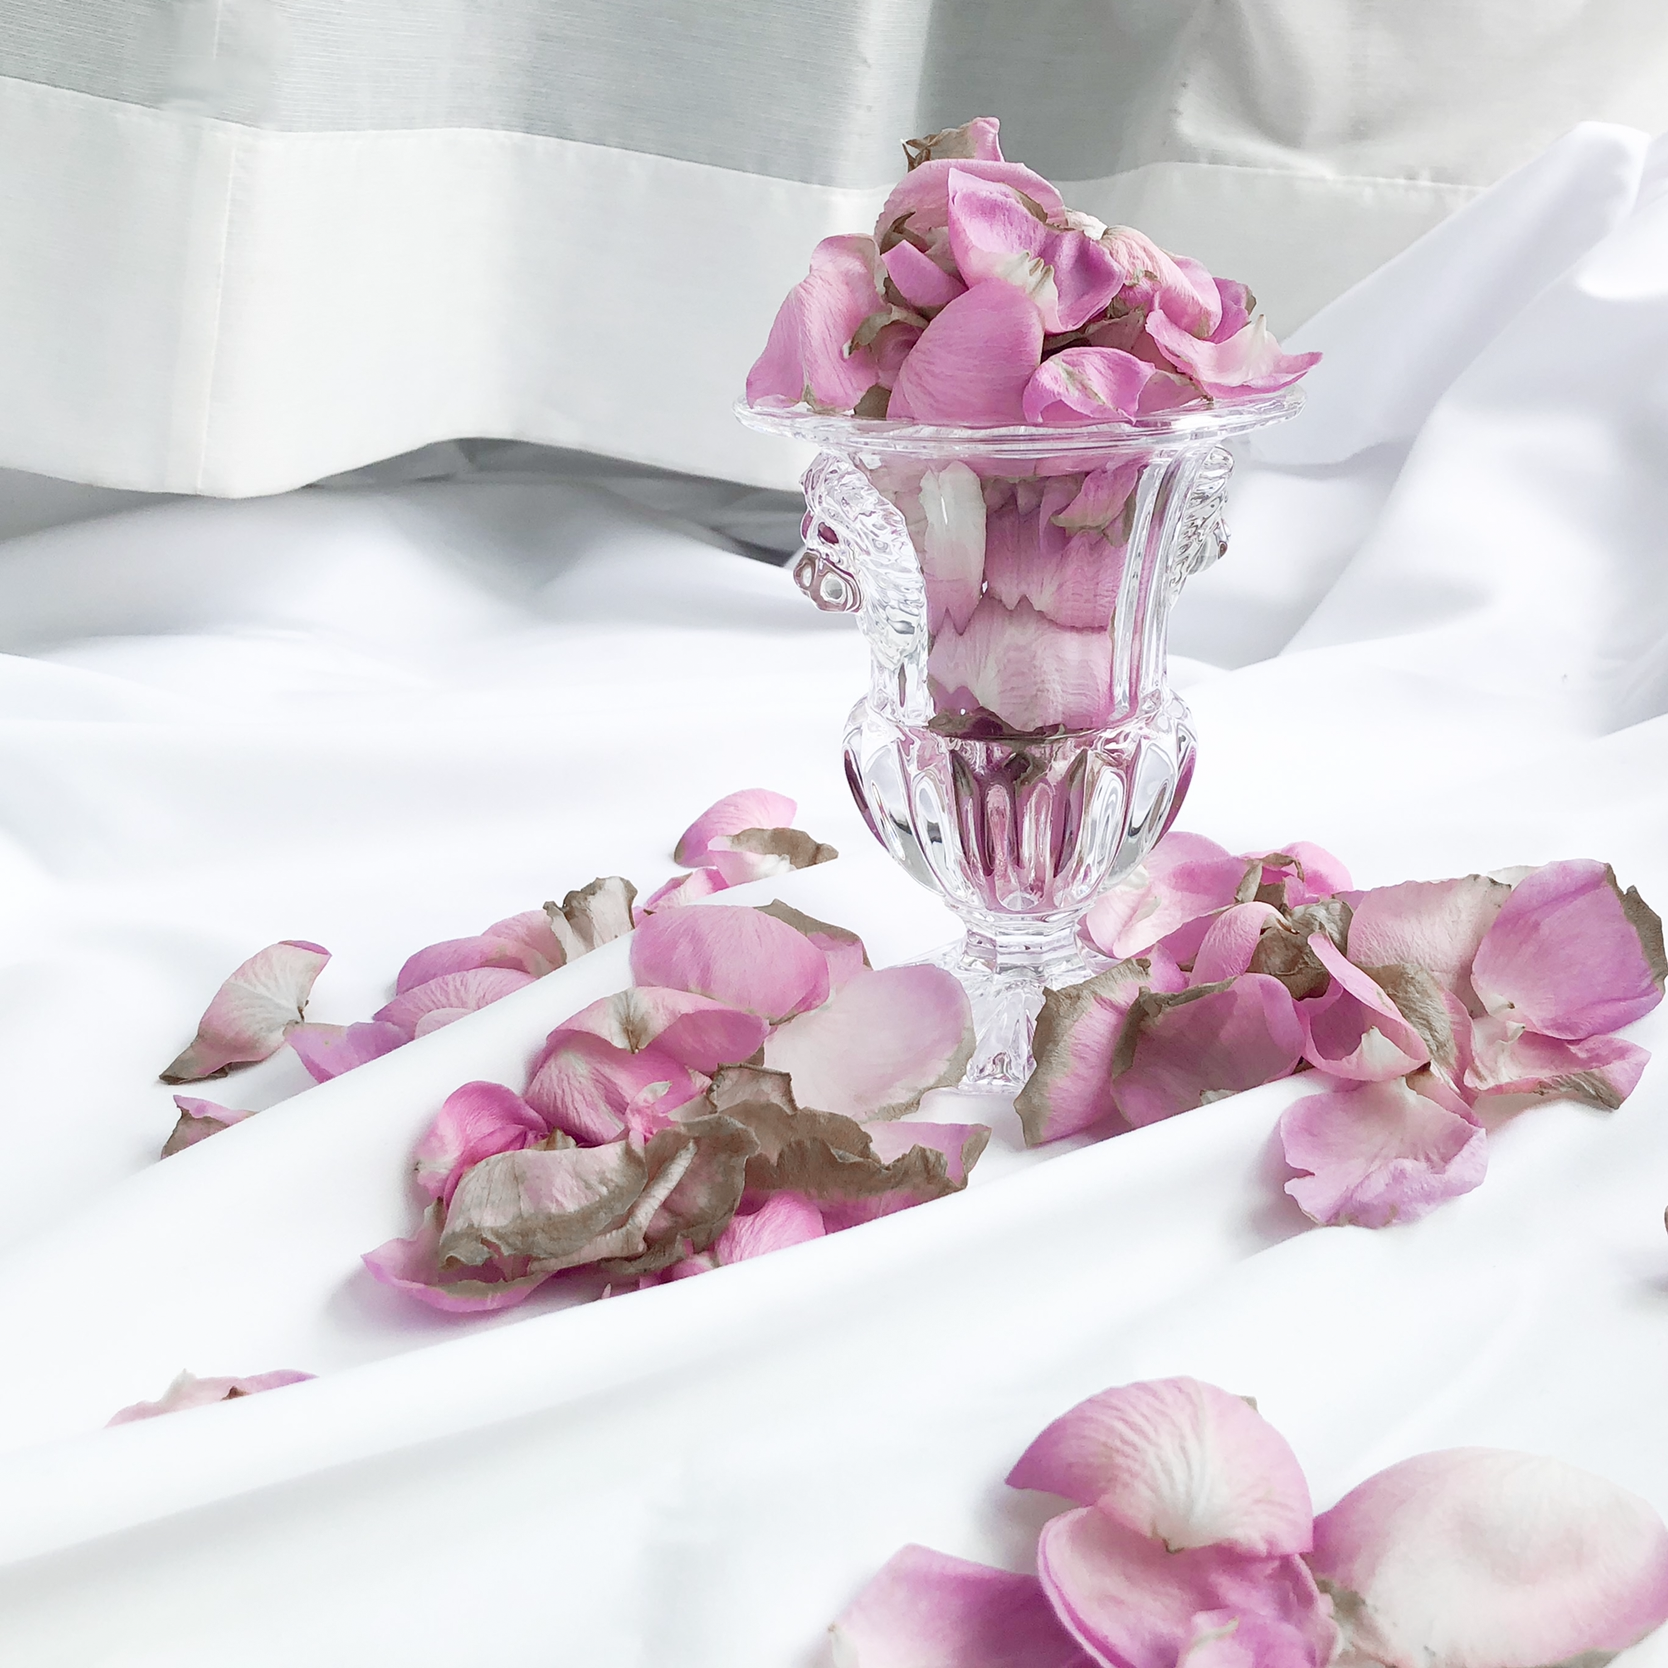 バラ風呂の作り方 自宅でのやり方と効果や注意点を総まとめ Erma S Flower Note